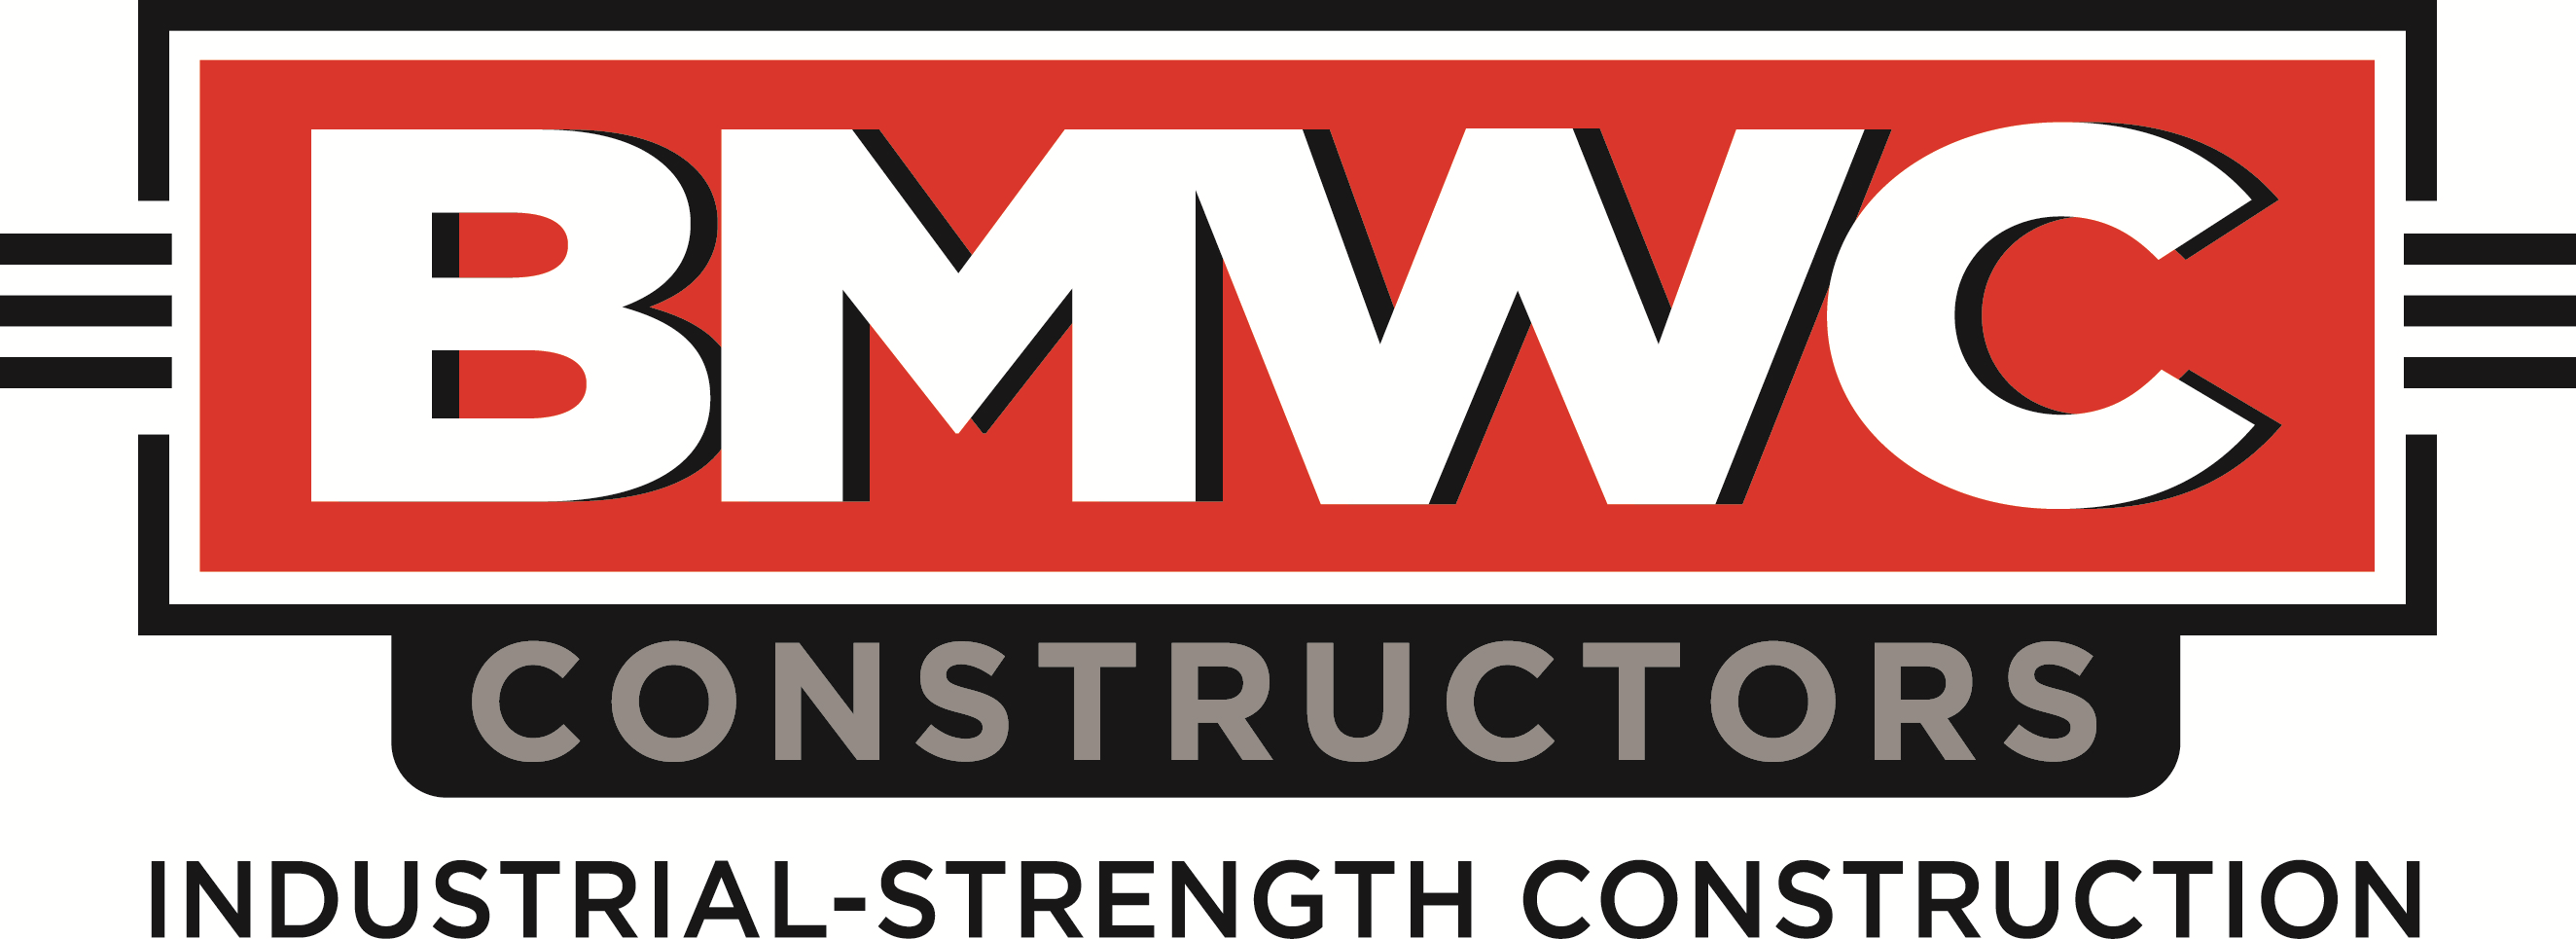 BMWC Constructors, Inc. logo